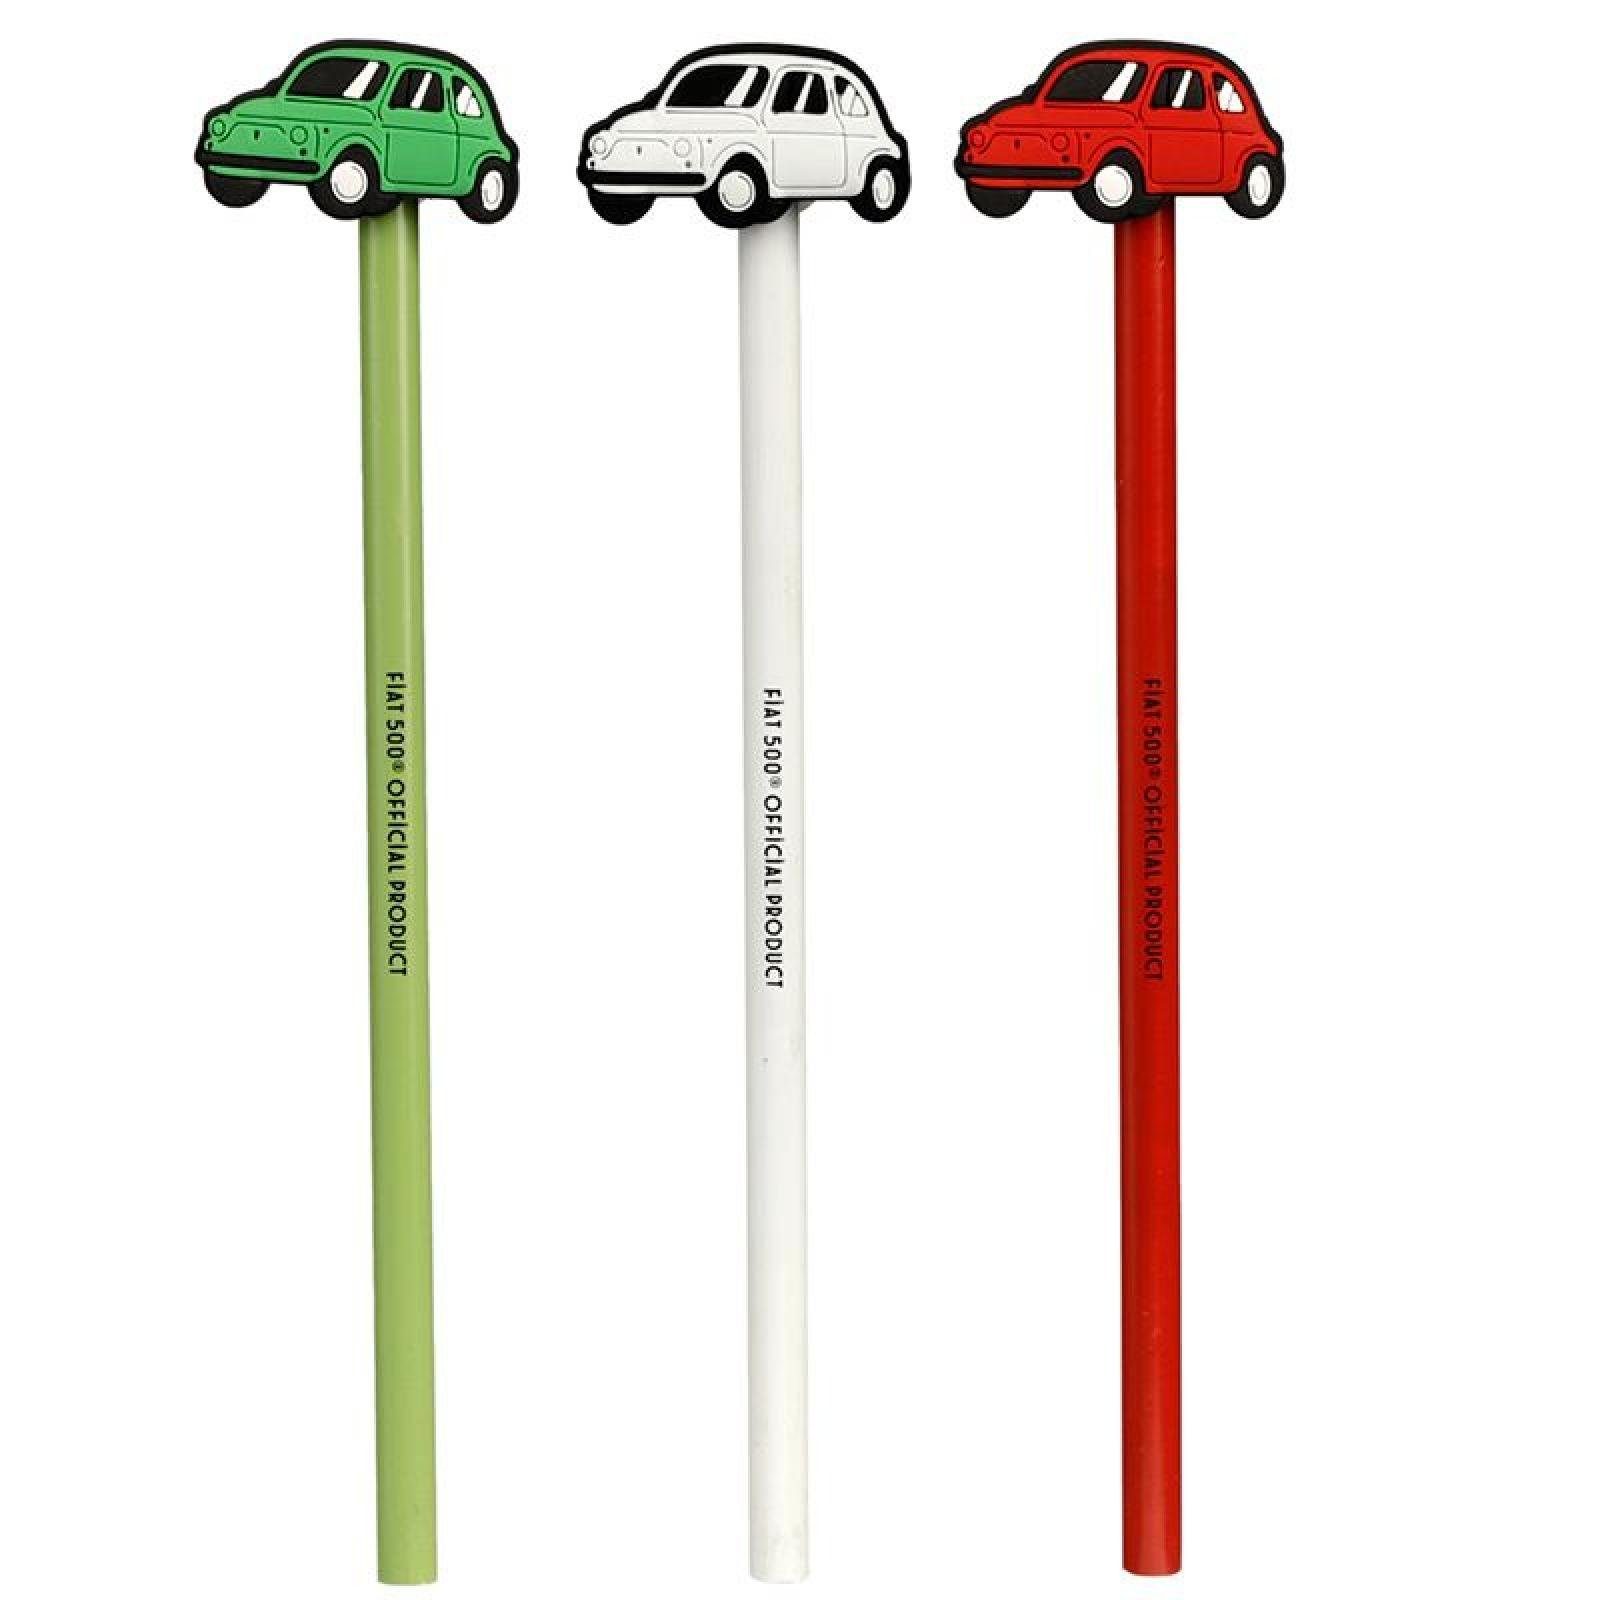 Puckator Bleistift Fiat 500 Retro Bleistift mit PVC (pro Stück), PVC Topper in Form von Fiat 500 Retro